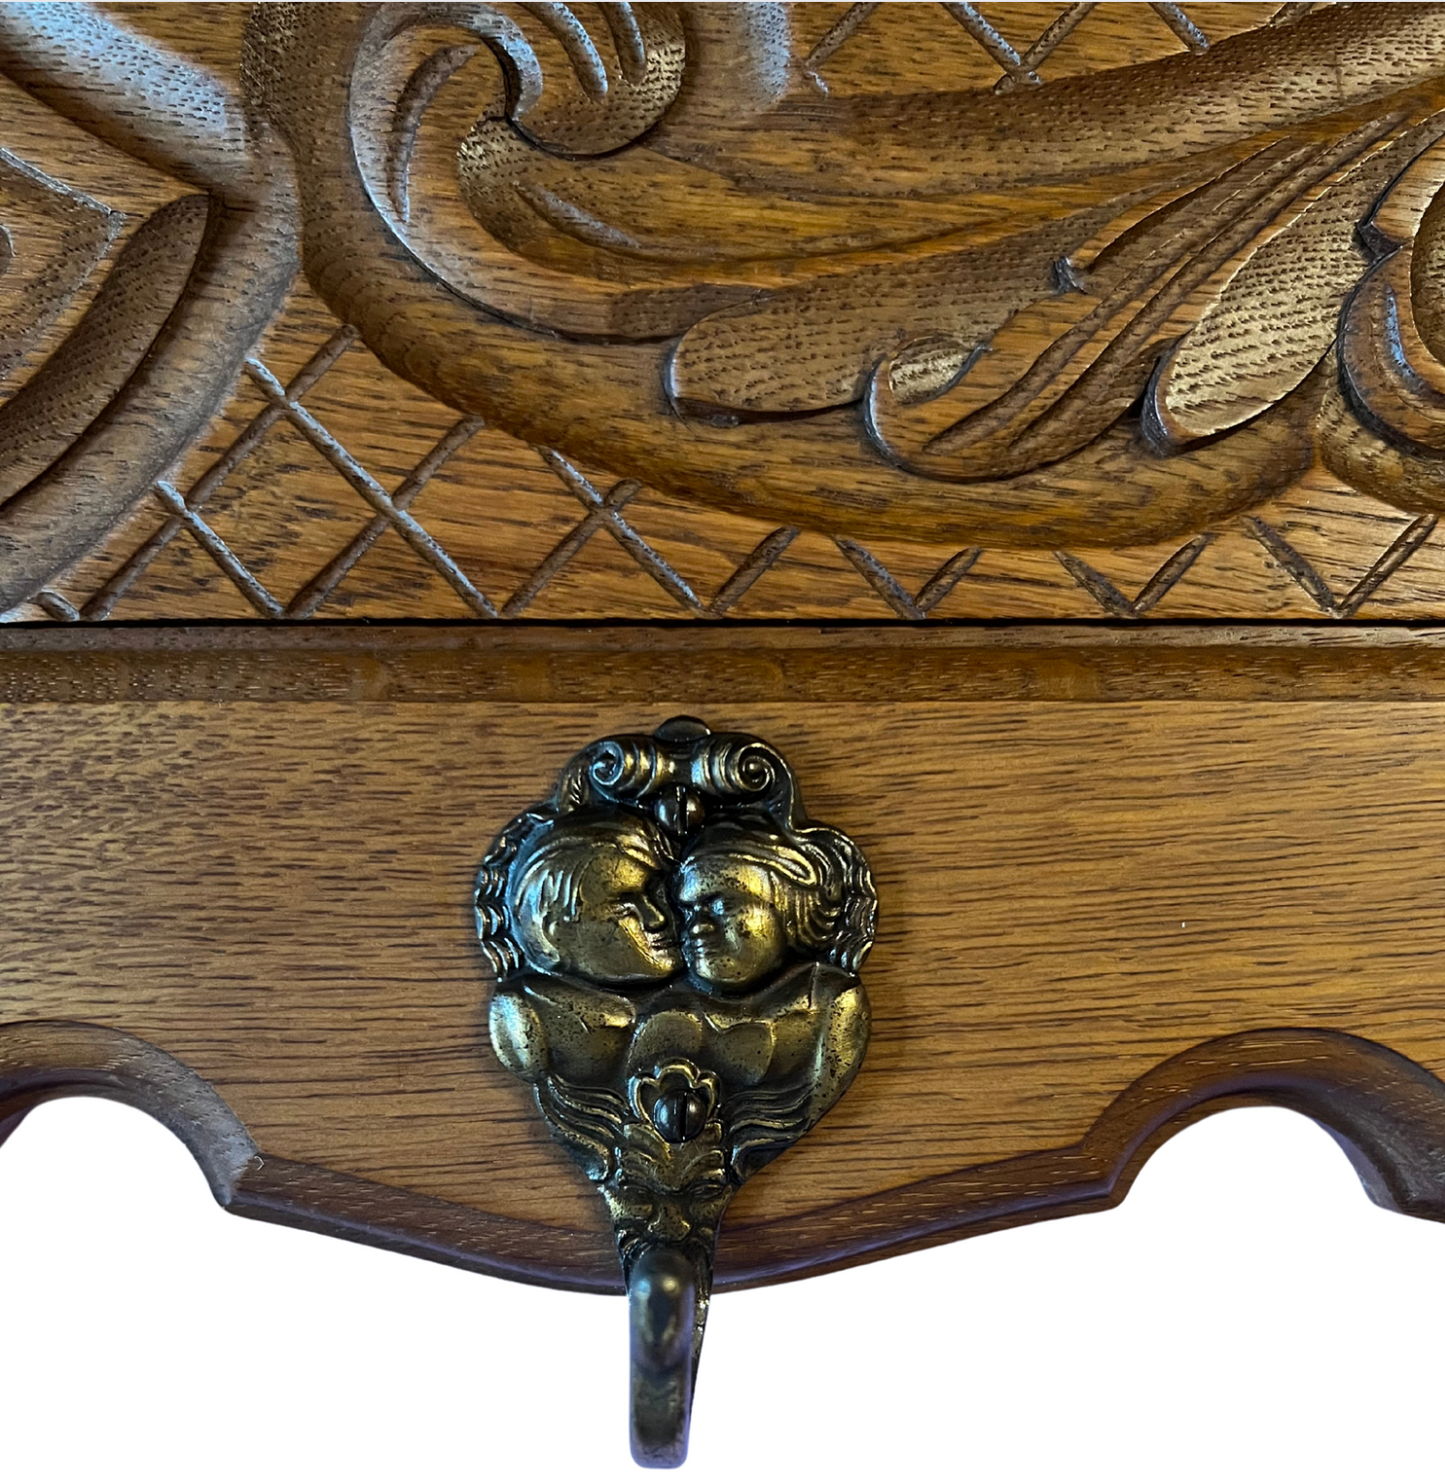 Antique French Carved Detail Oak Coat Rack